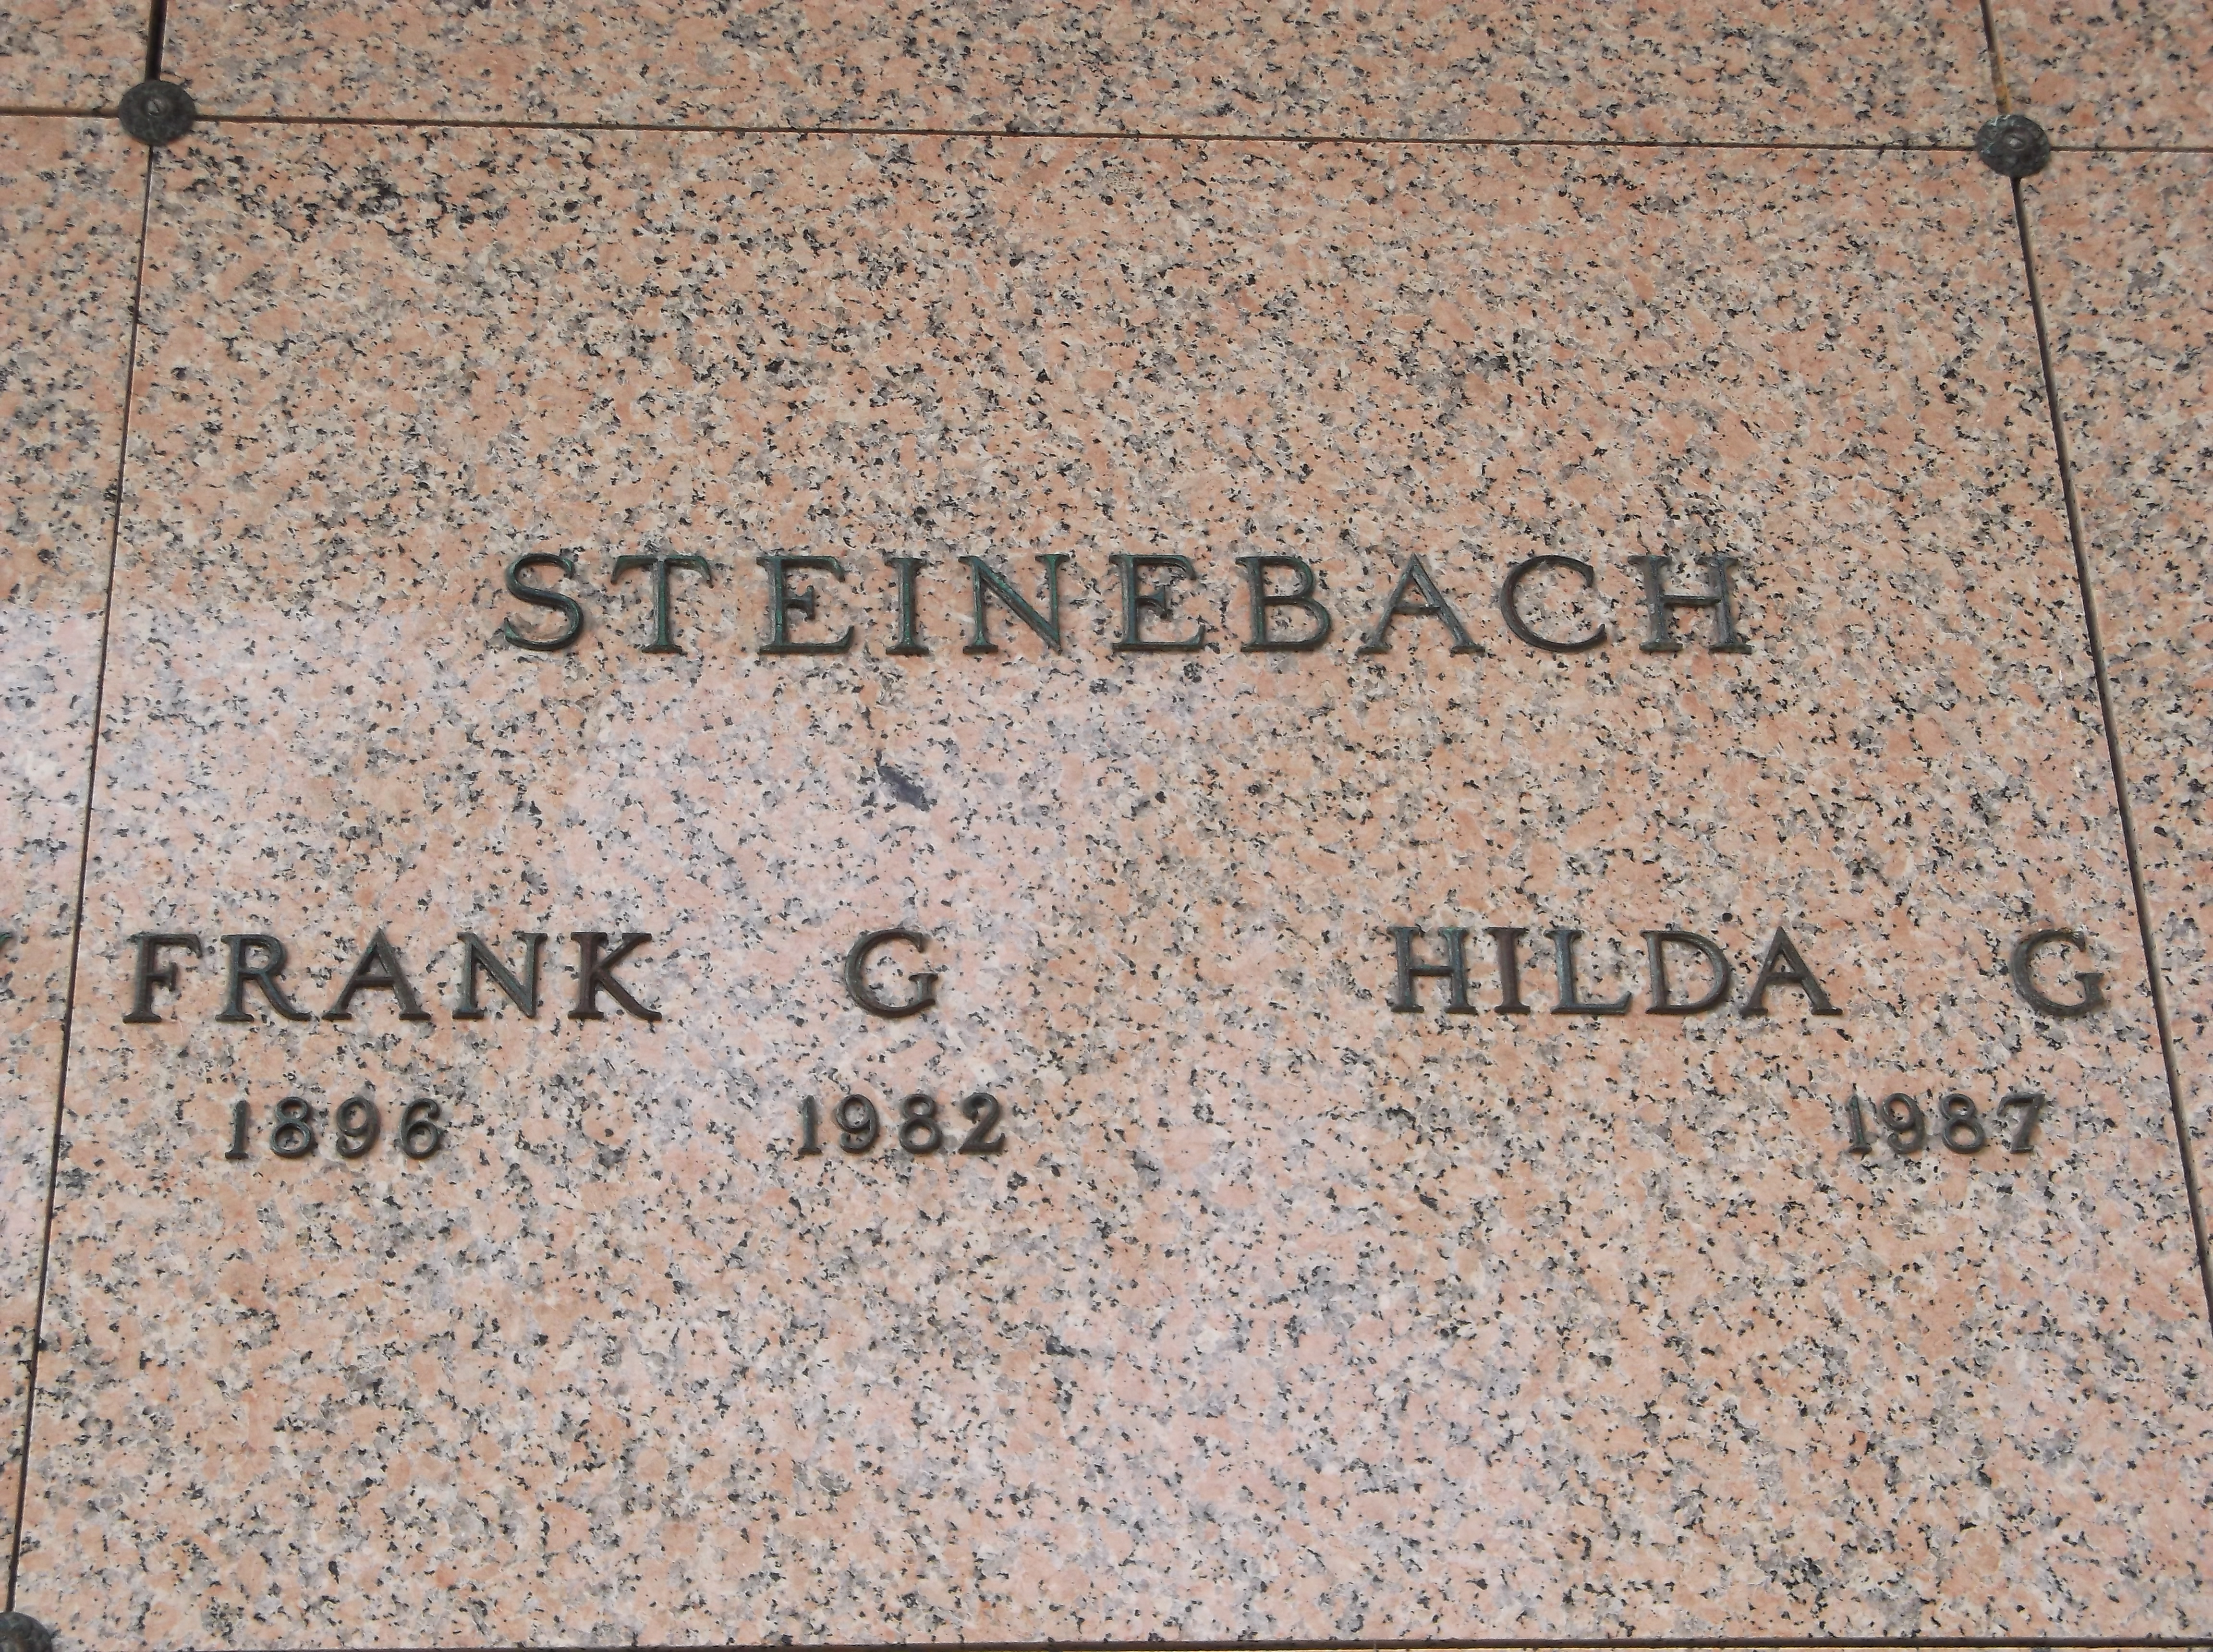 Frank G Steinebach